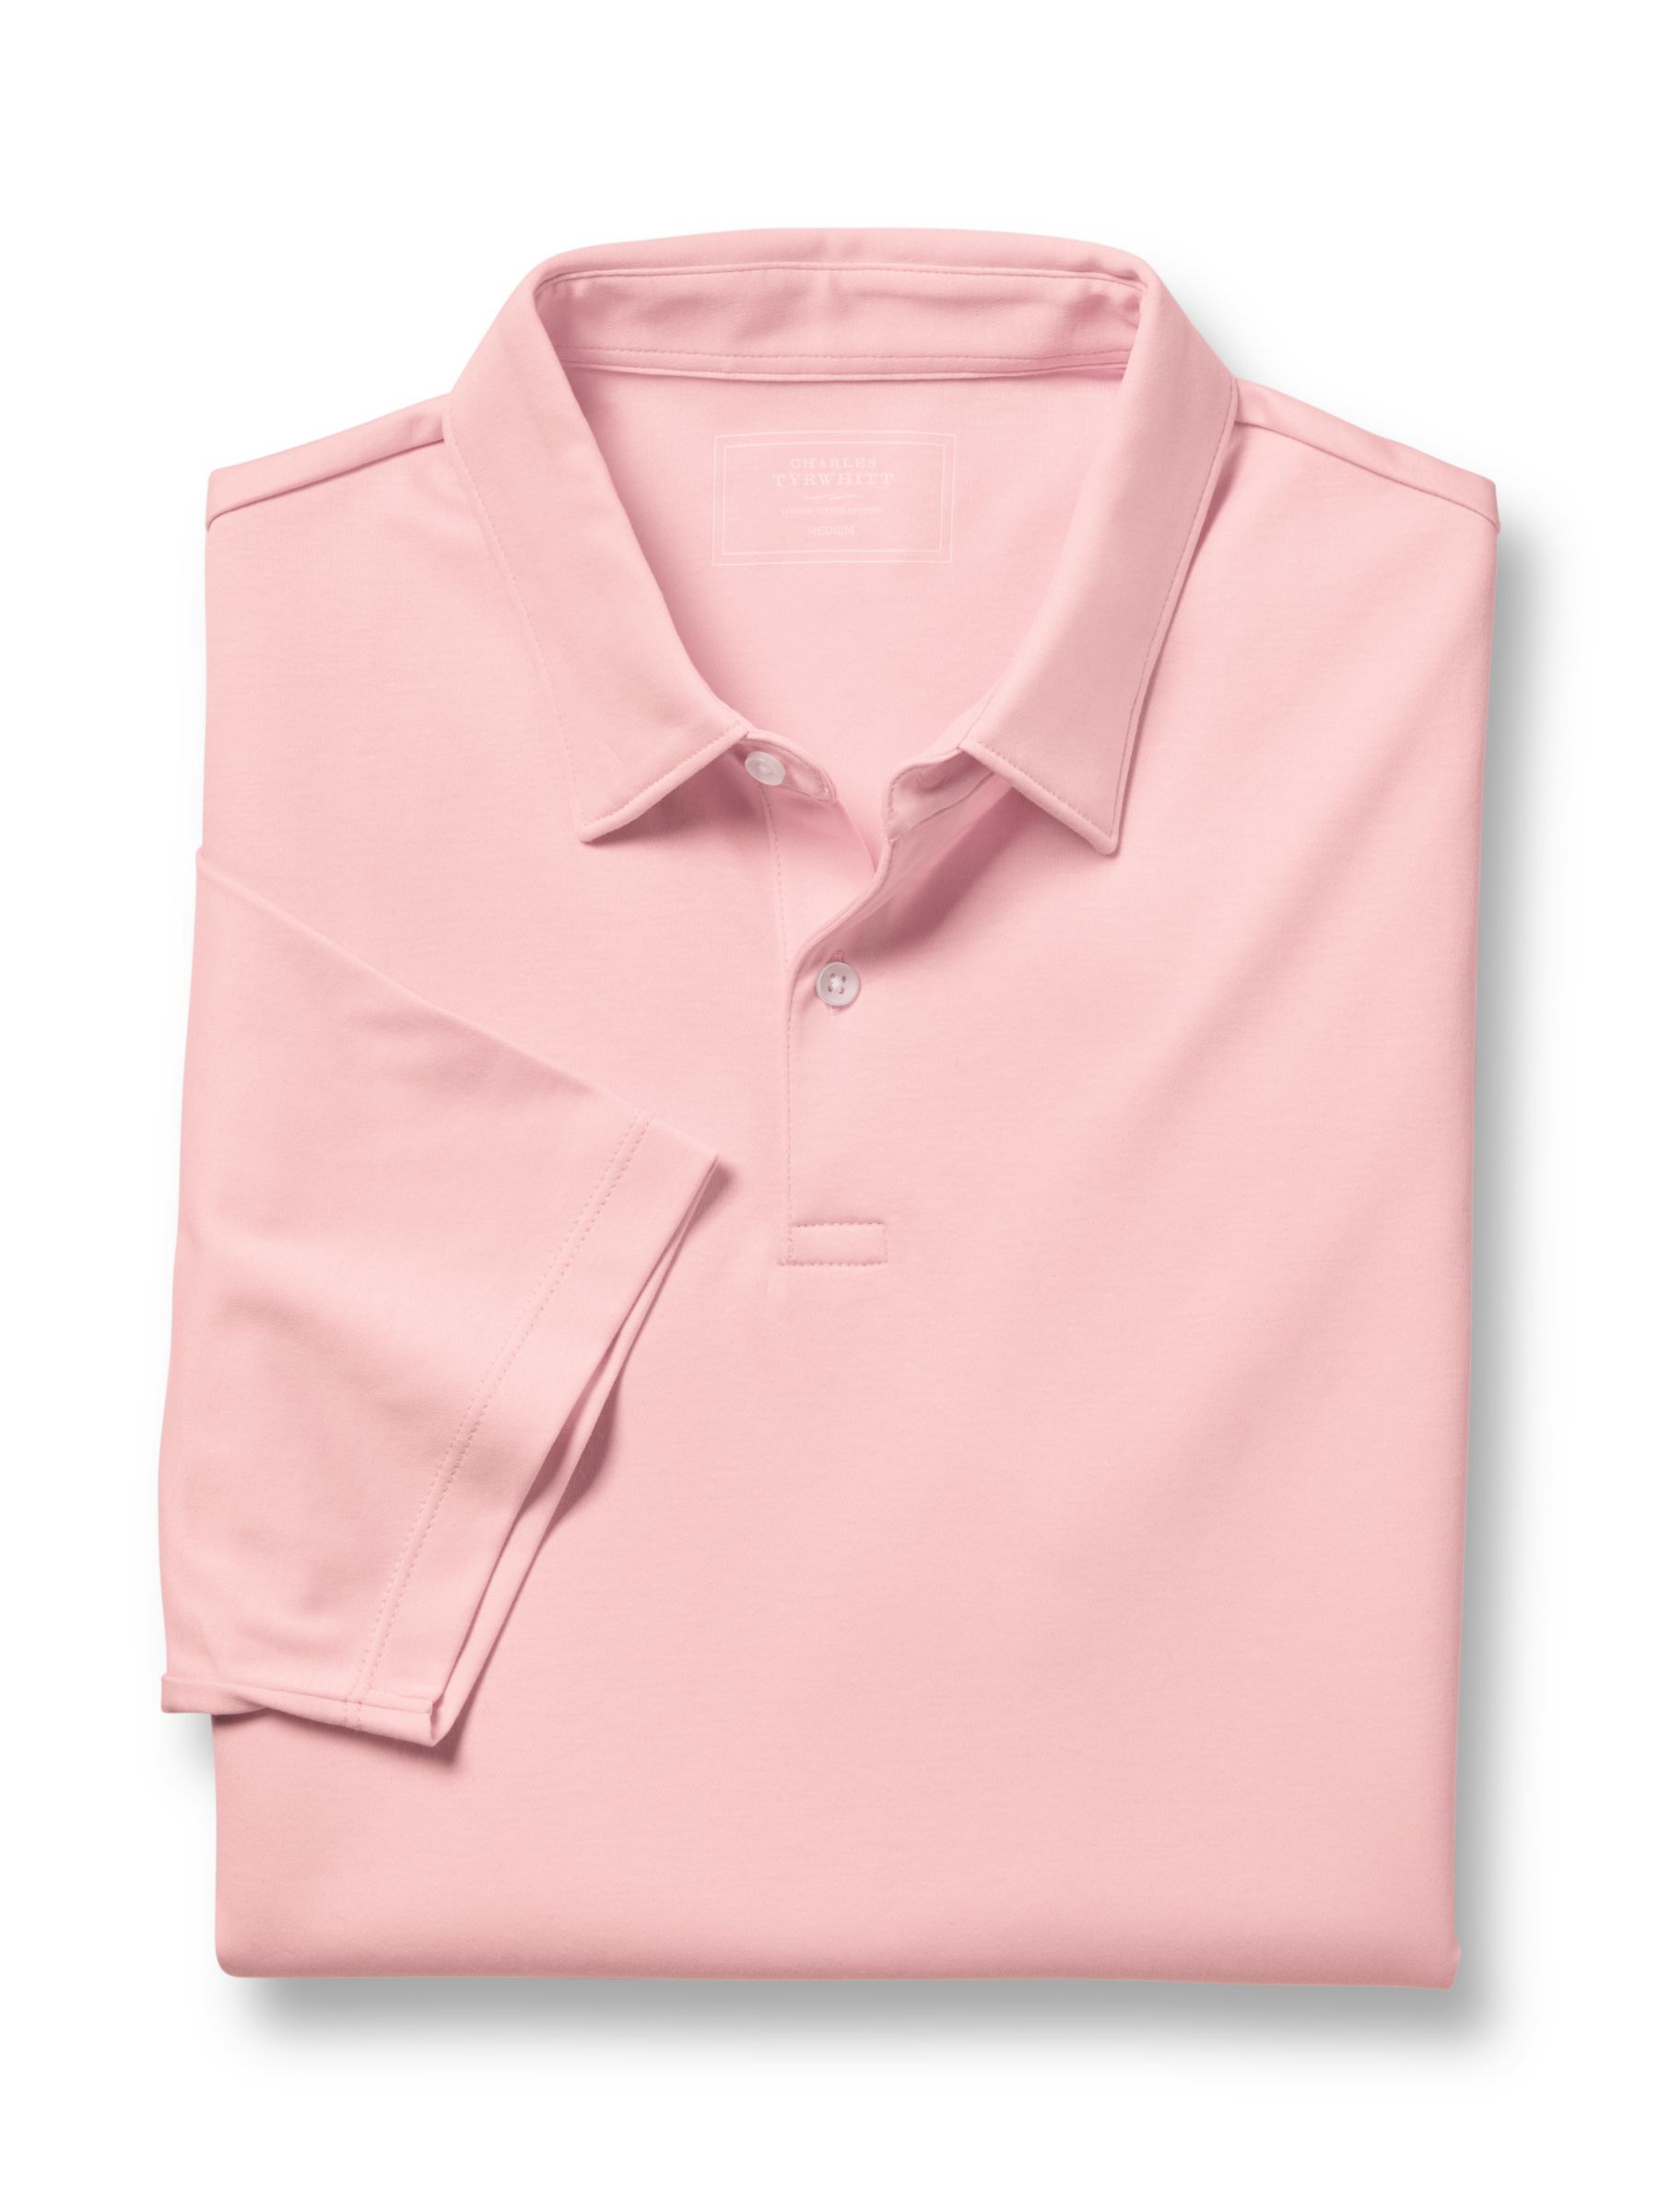 Charles Tyrwhitt Short Sleeve Jersey Polo Shirt, Light Pink, XS